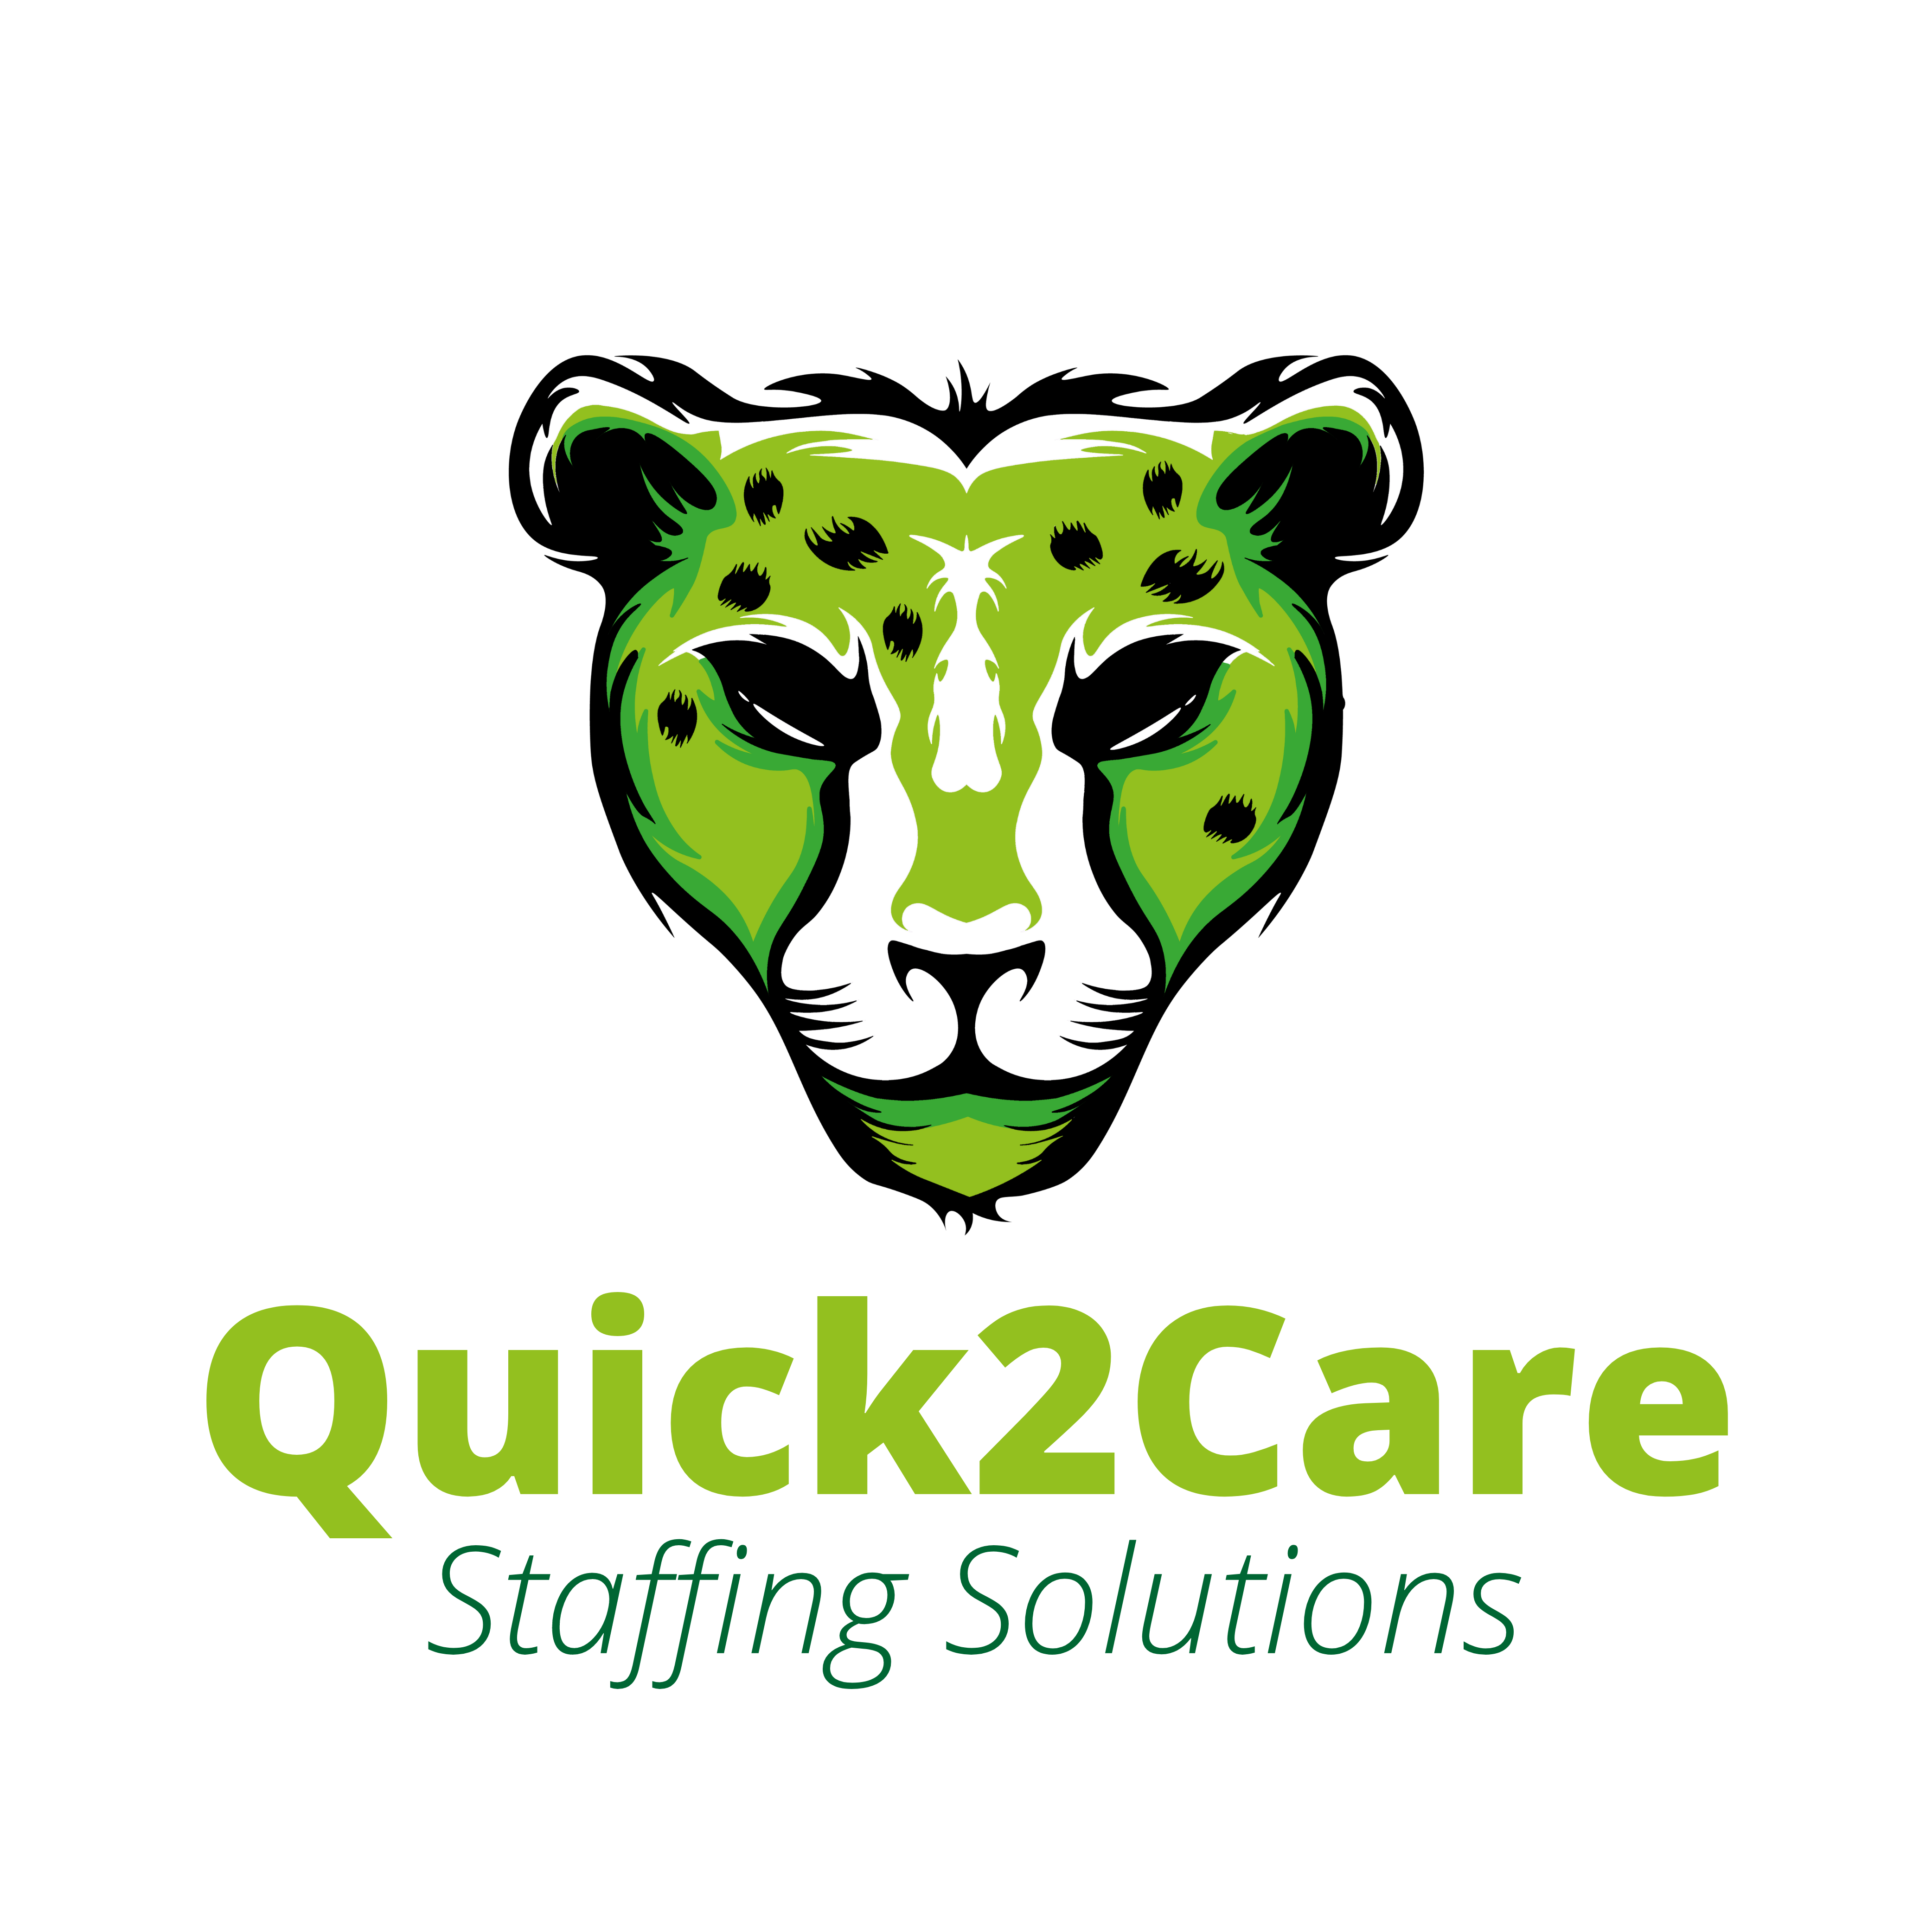 Quick2Care Logo